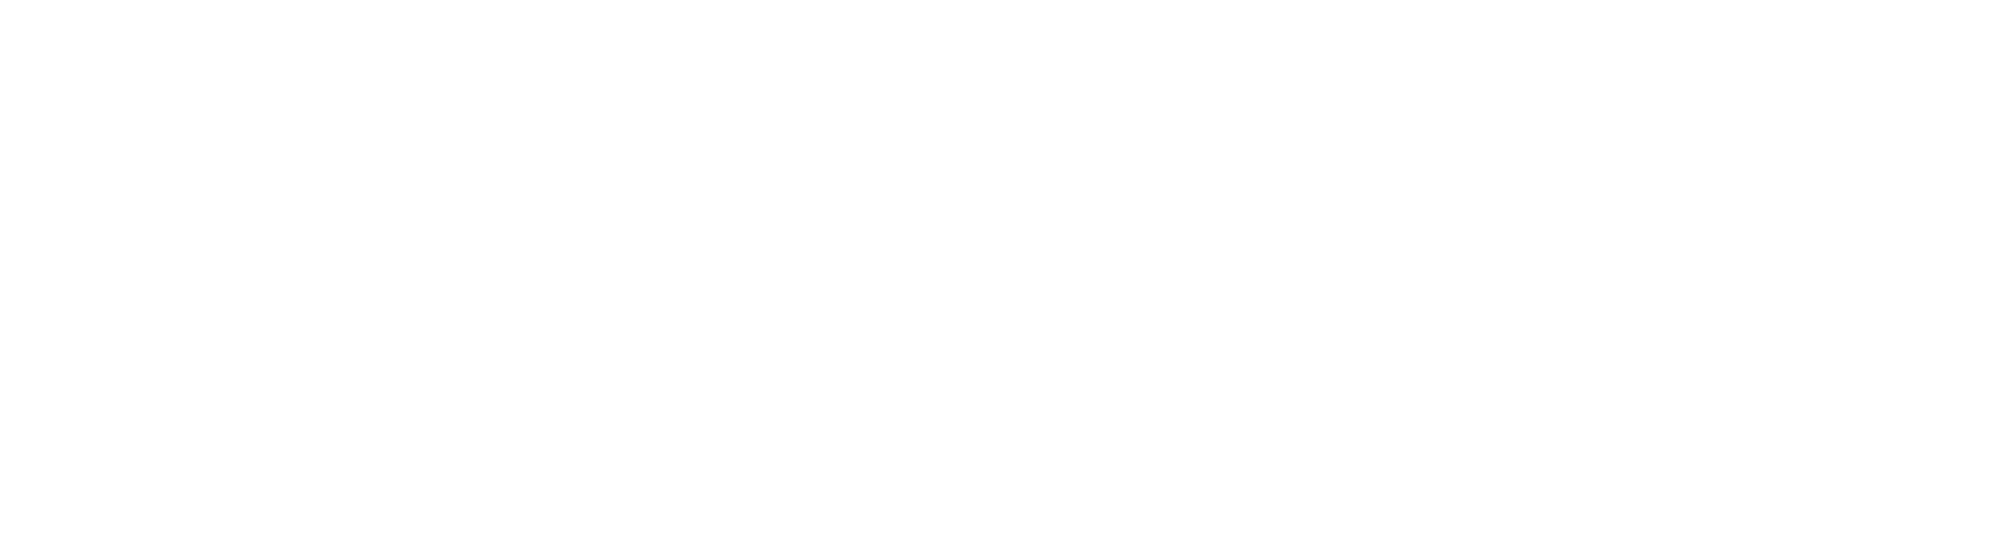 CT Gaming Interactive